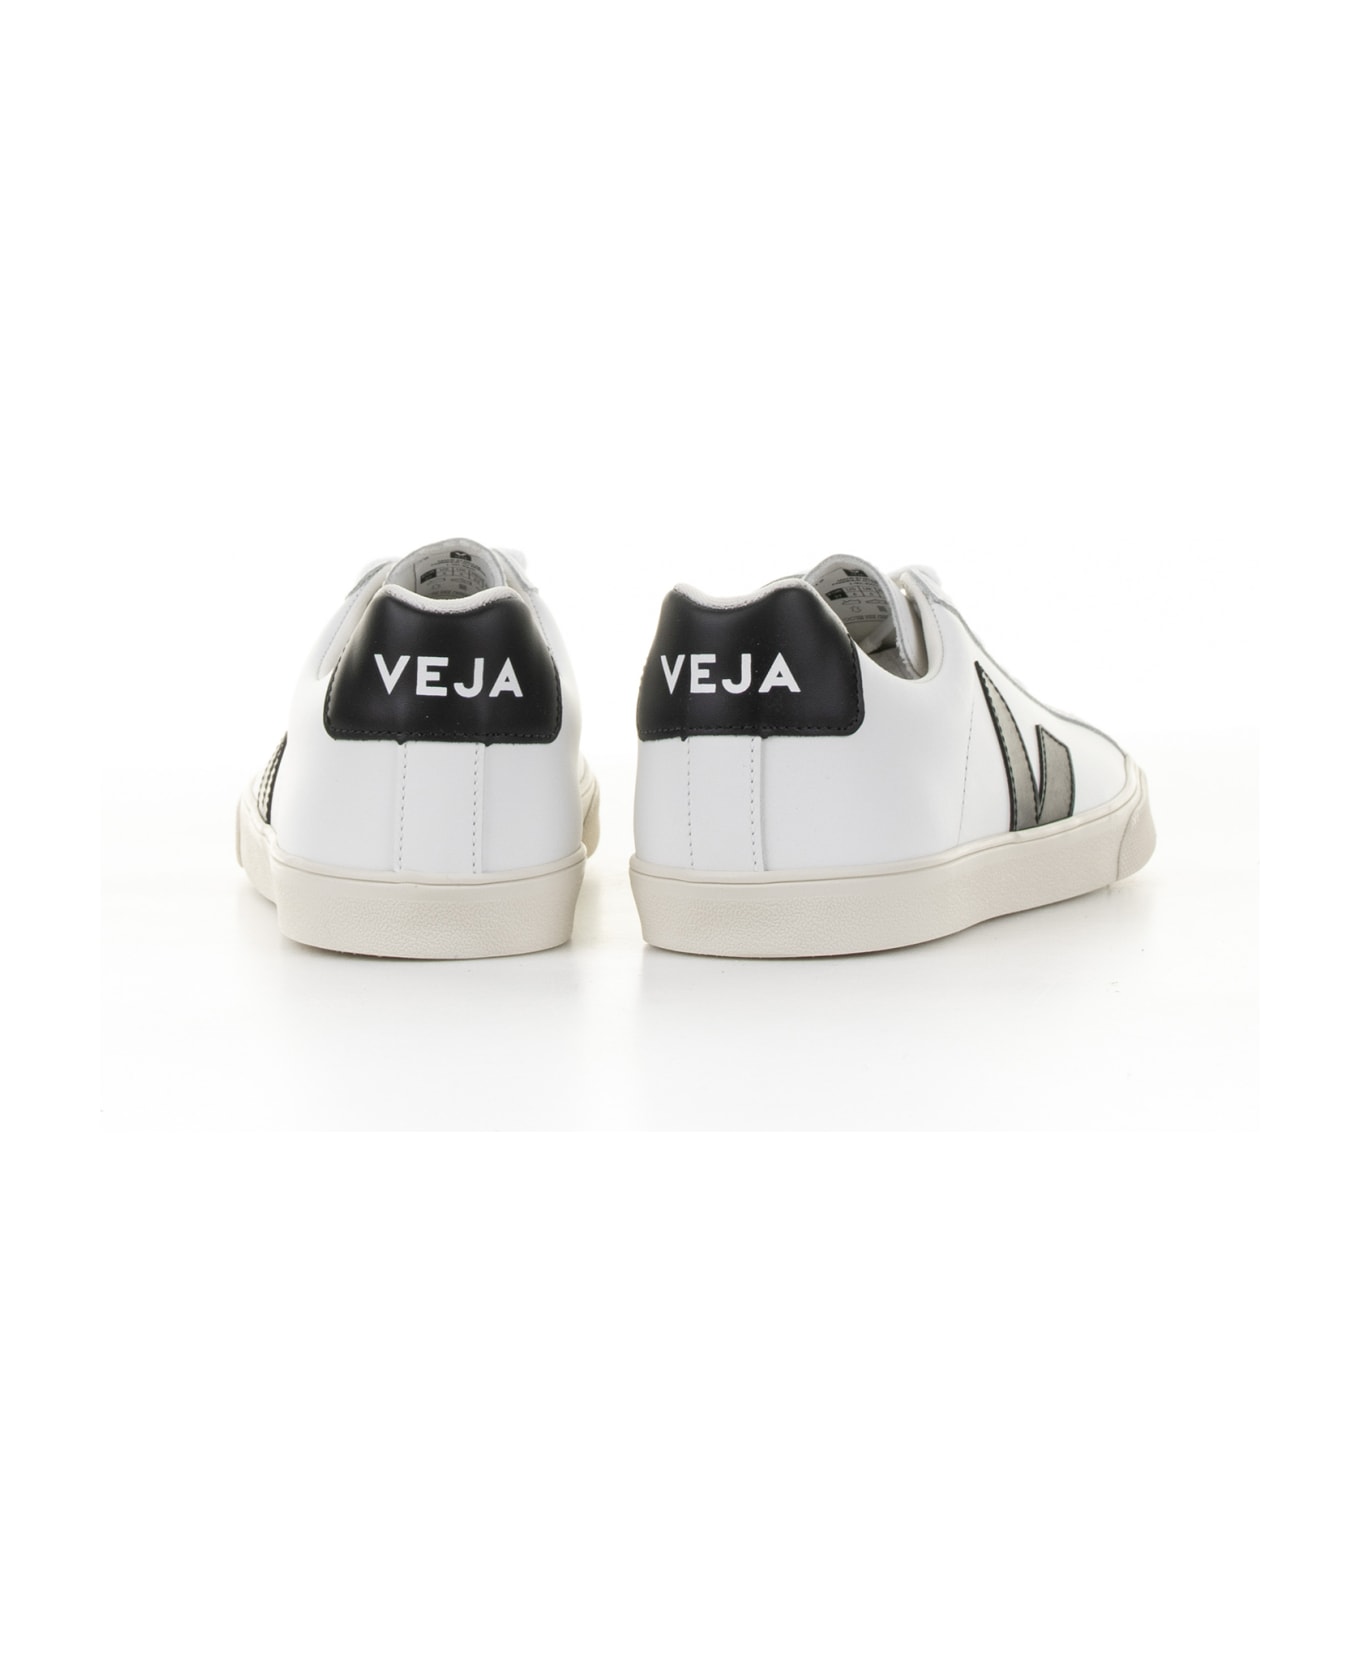 Veja Campo Sneaker In White Black Leather For Men スニーカー